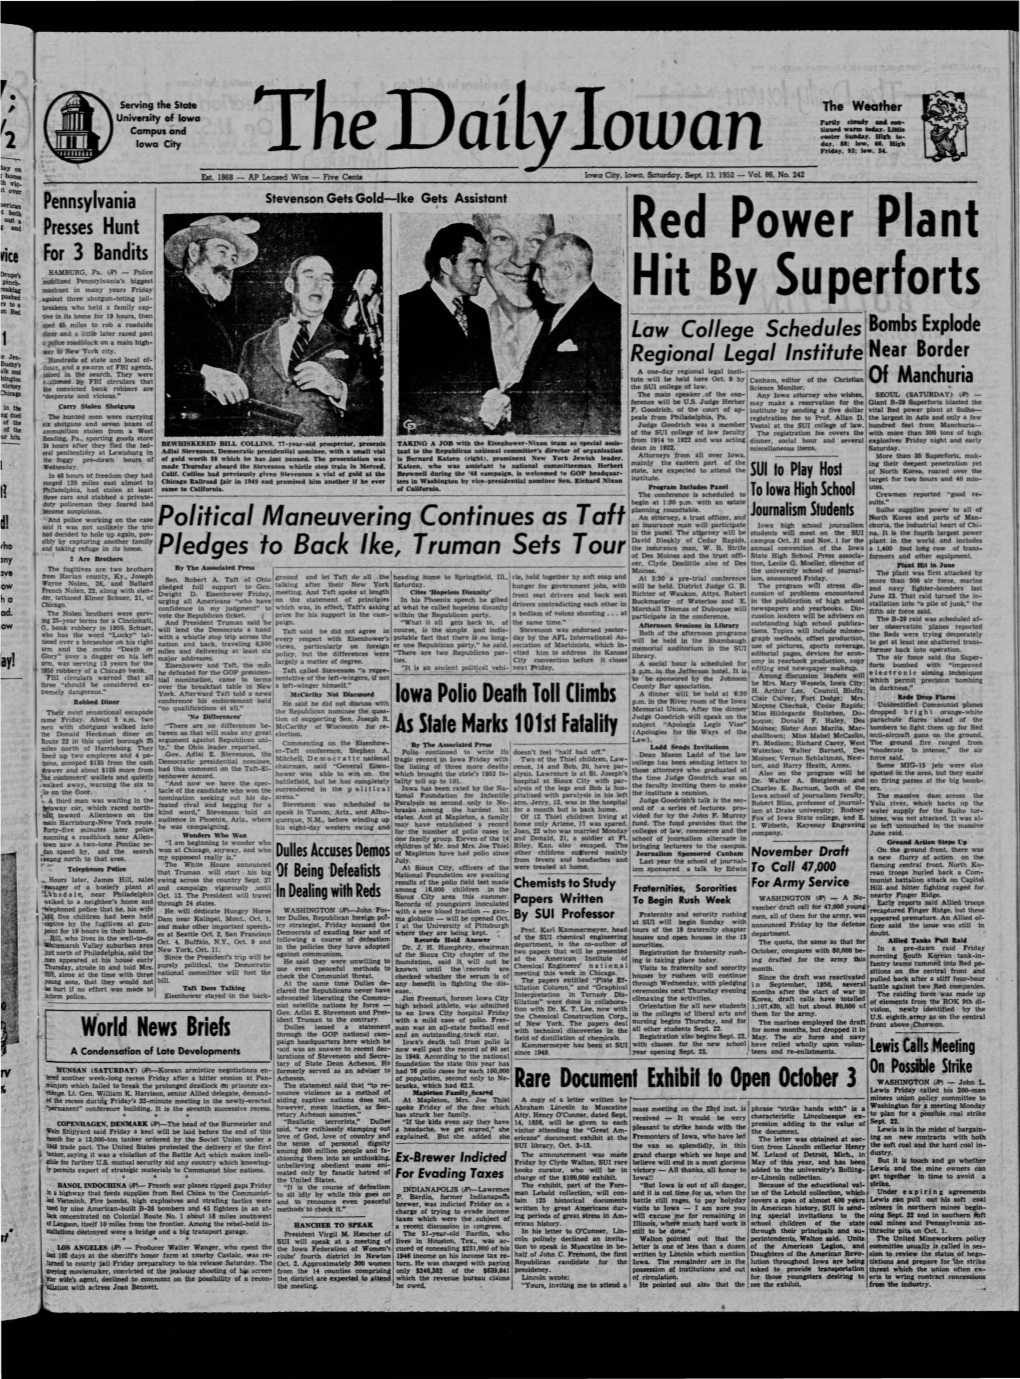 Daily Iowan (Iowa City, Iowa), 1952-09-13